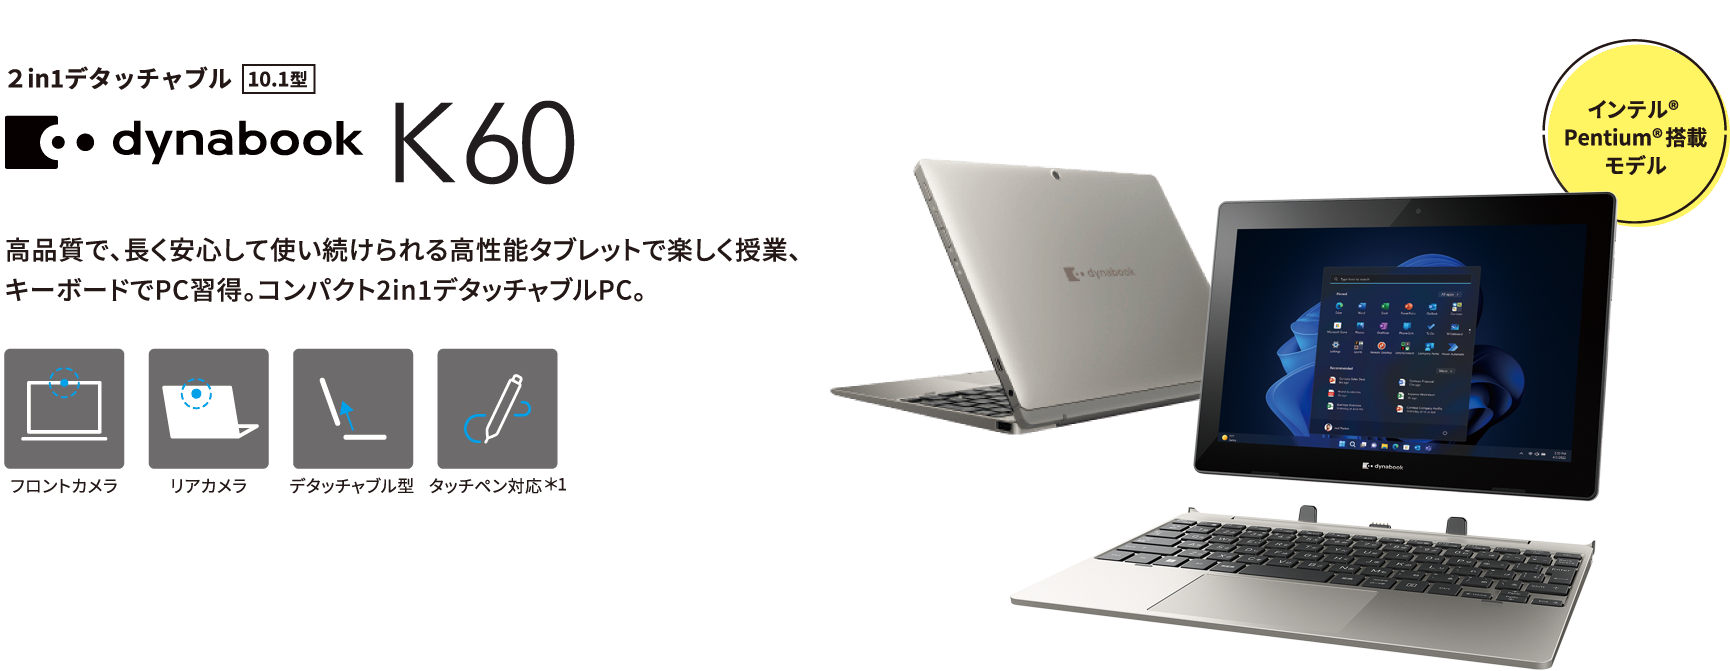 dynabook K60 高品質で、長く安心して使い続けられる高性能タブレットで楽しく授業、キーボードでPC習得。コンパクト2in1デタッチャブルPC。